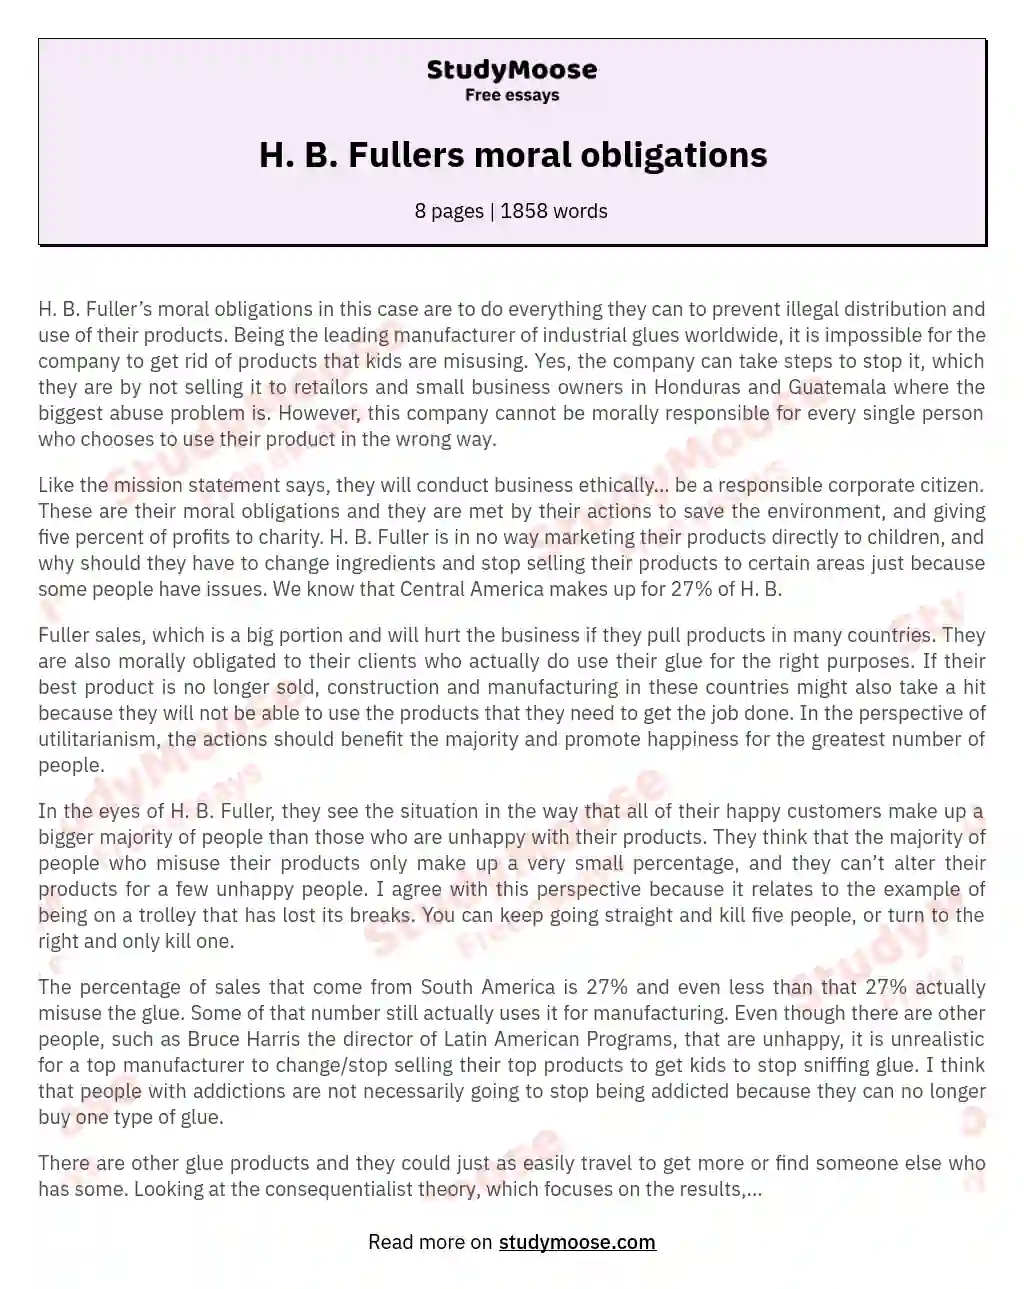 H. B. Fullers moral obligations essay